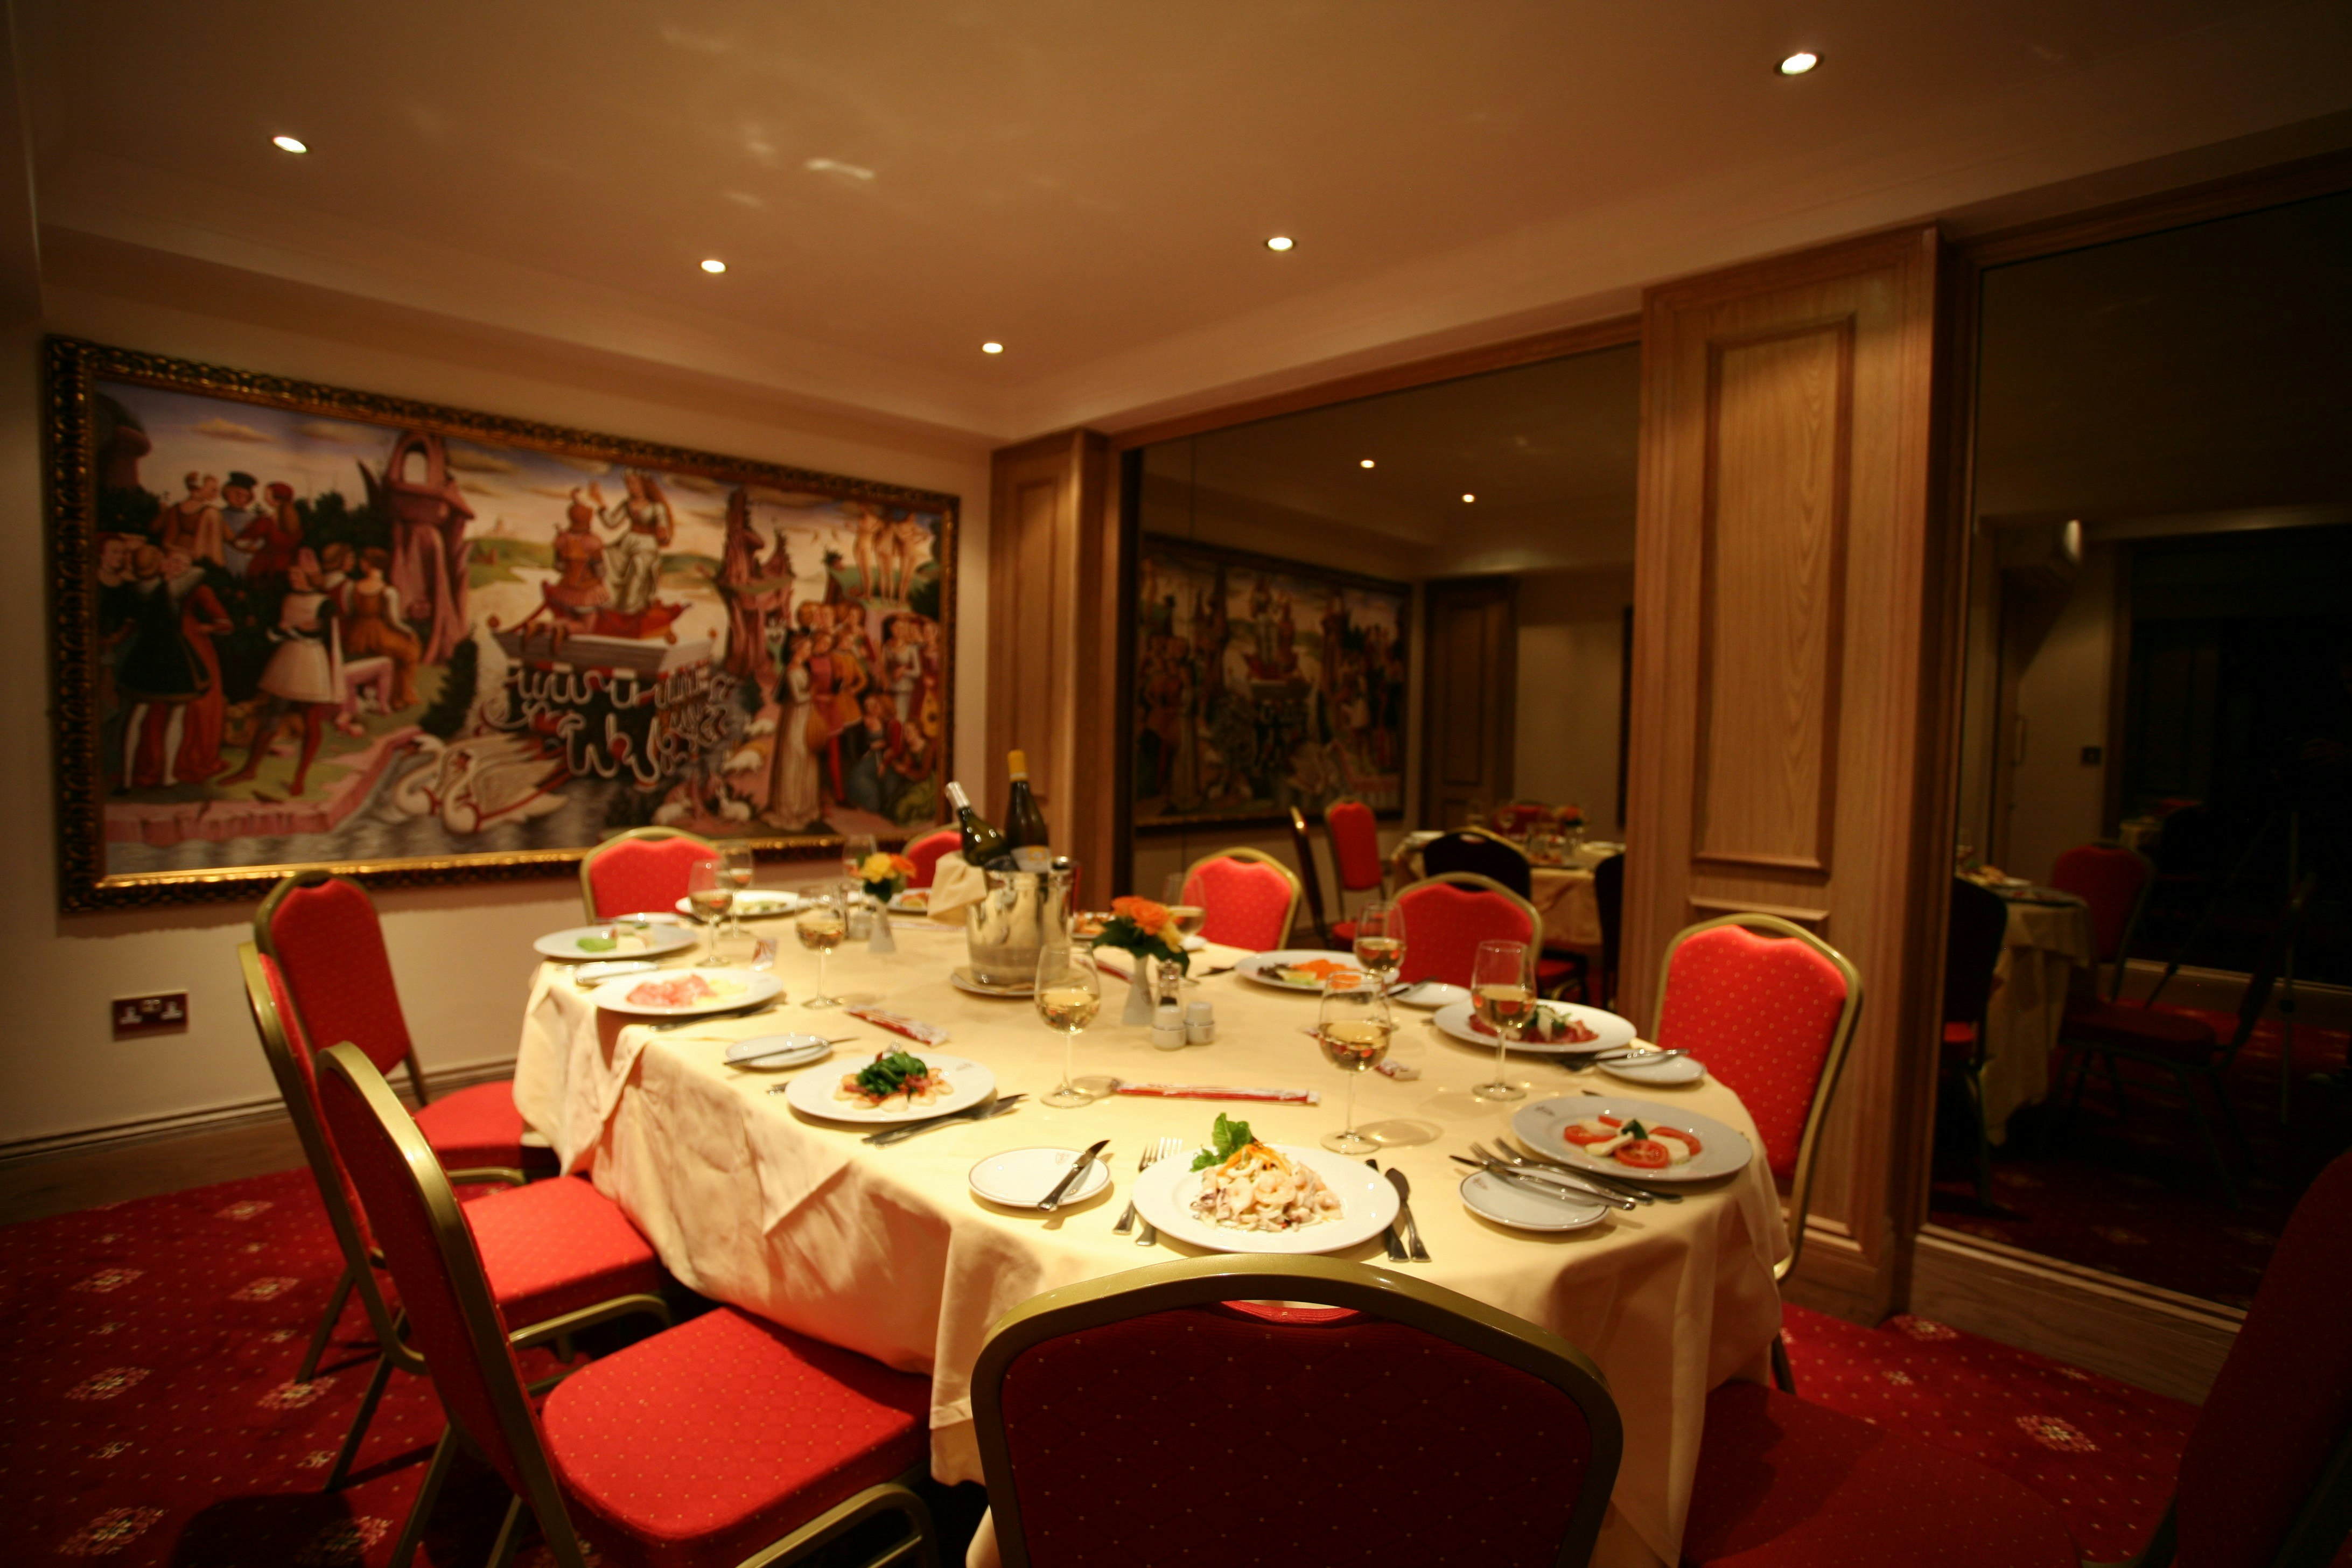 Bolton's Restaurant - Venetian Room image 5